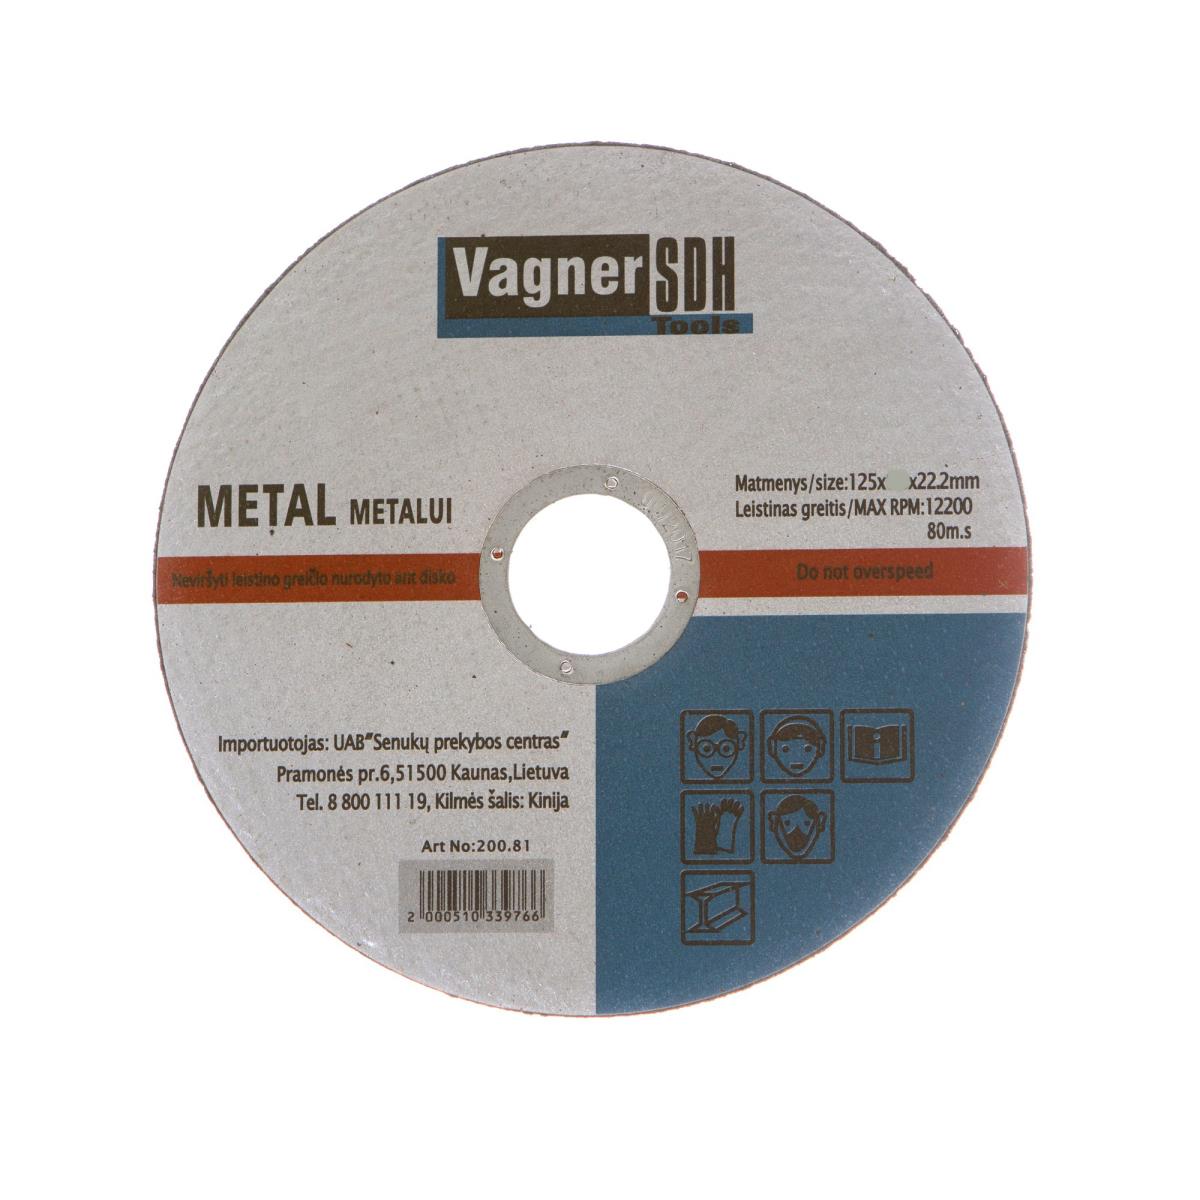 Trennscheiben 50 Stk. ø125 x 1,2mm für Metall Stahl Flexscheiben,Vagner SDH,2100510349267, 4243067013354